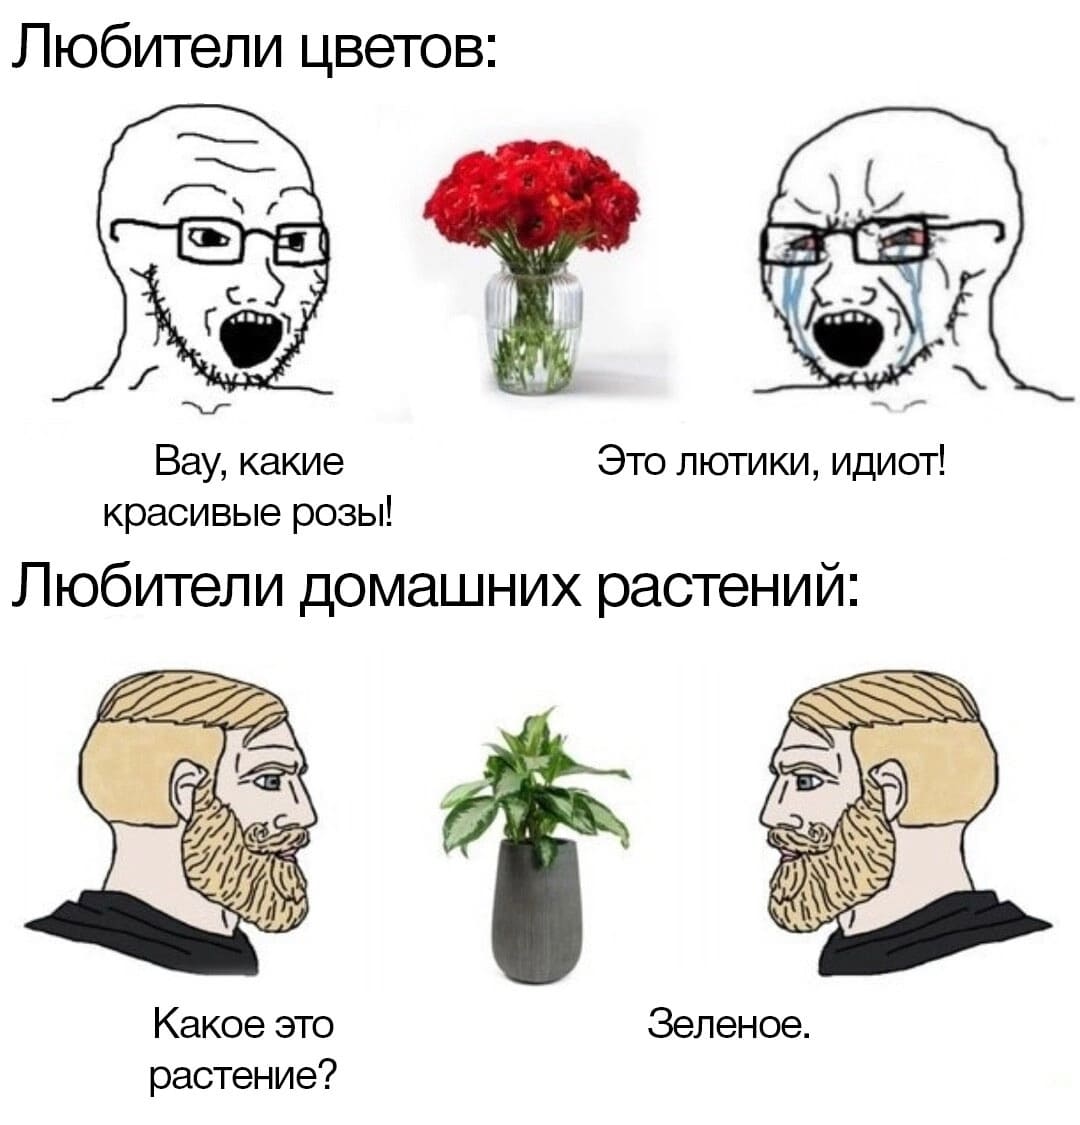 Любители цветов:
— Вау, какие красивые розы!
— Это лютики, идиот!

Любители домашних растений:
— Какое это растение?
— Зелёное.